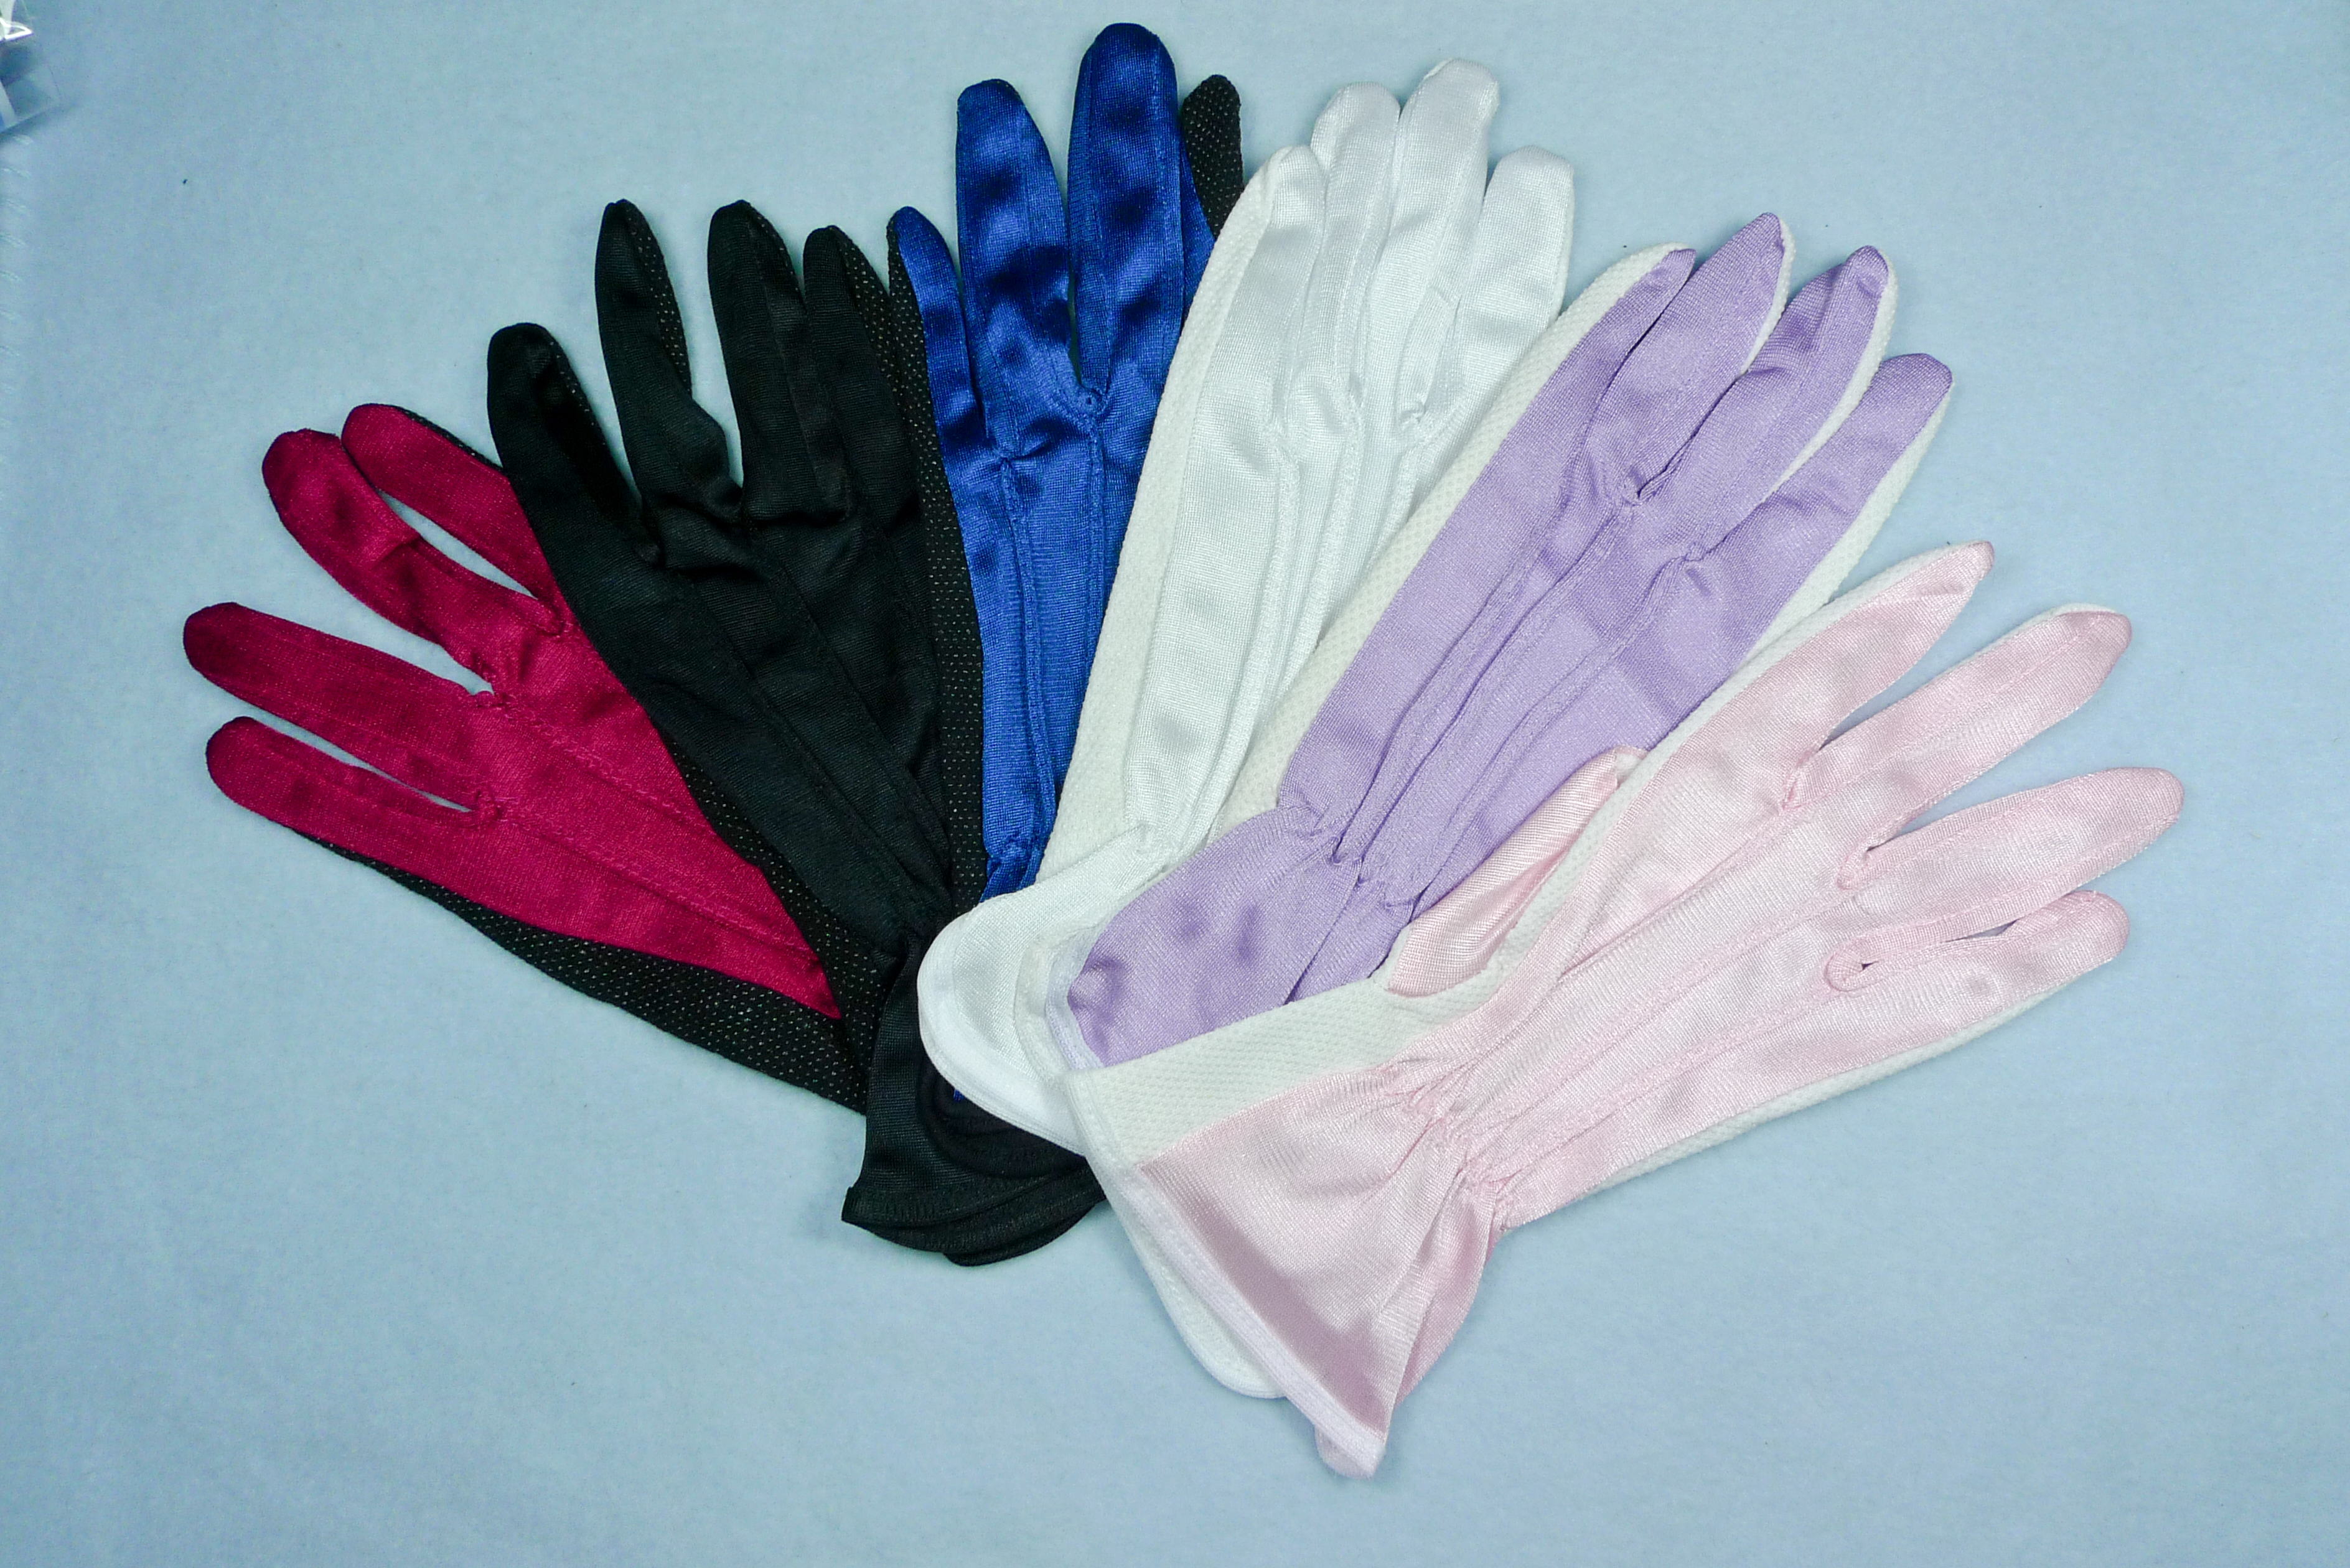 Găng tay len chấm PVC - Găng Tay Ho-Hsiang - Công Ty TNHH Công Nghiệp Ho-Hsiang